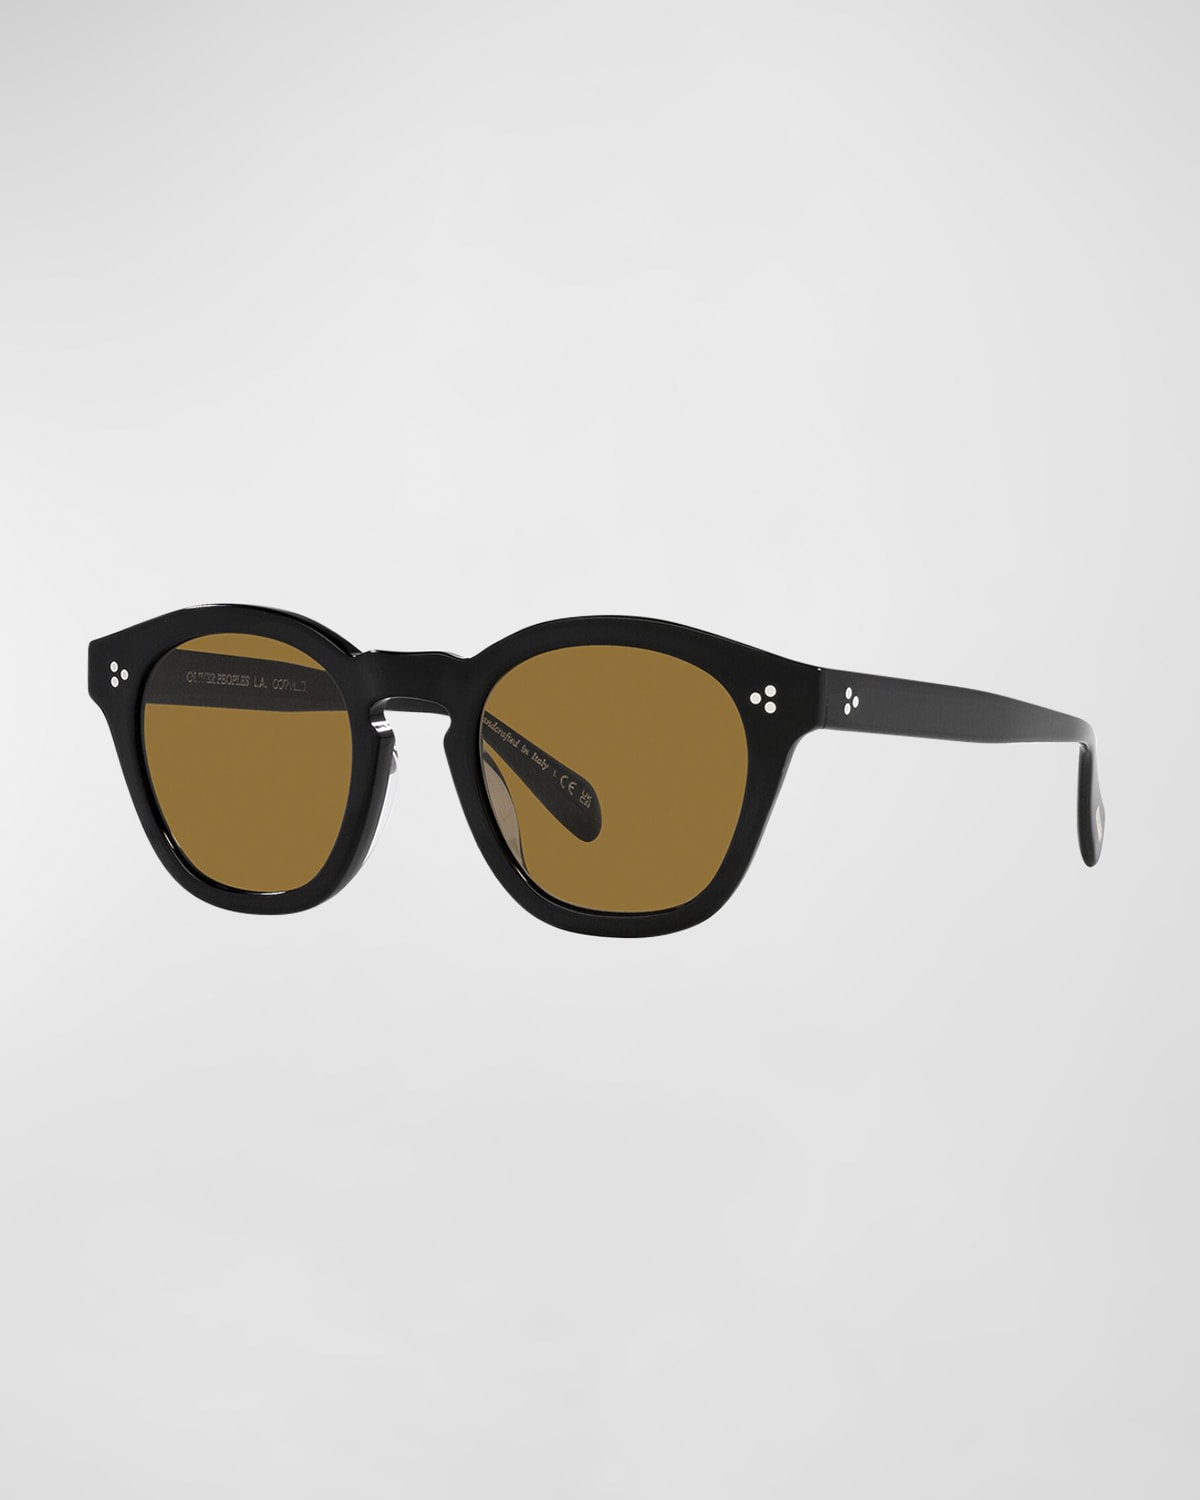 Boudreau L. A. Round Acetate & Plastic Sunglasses